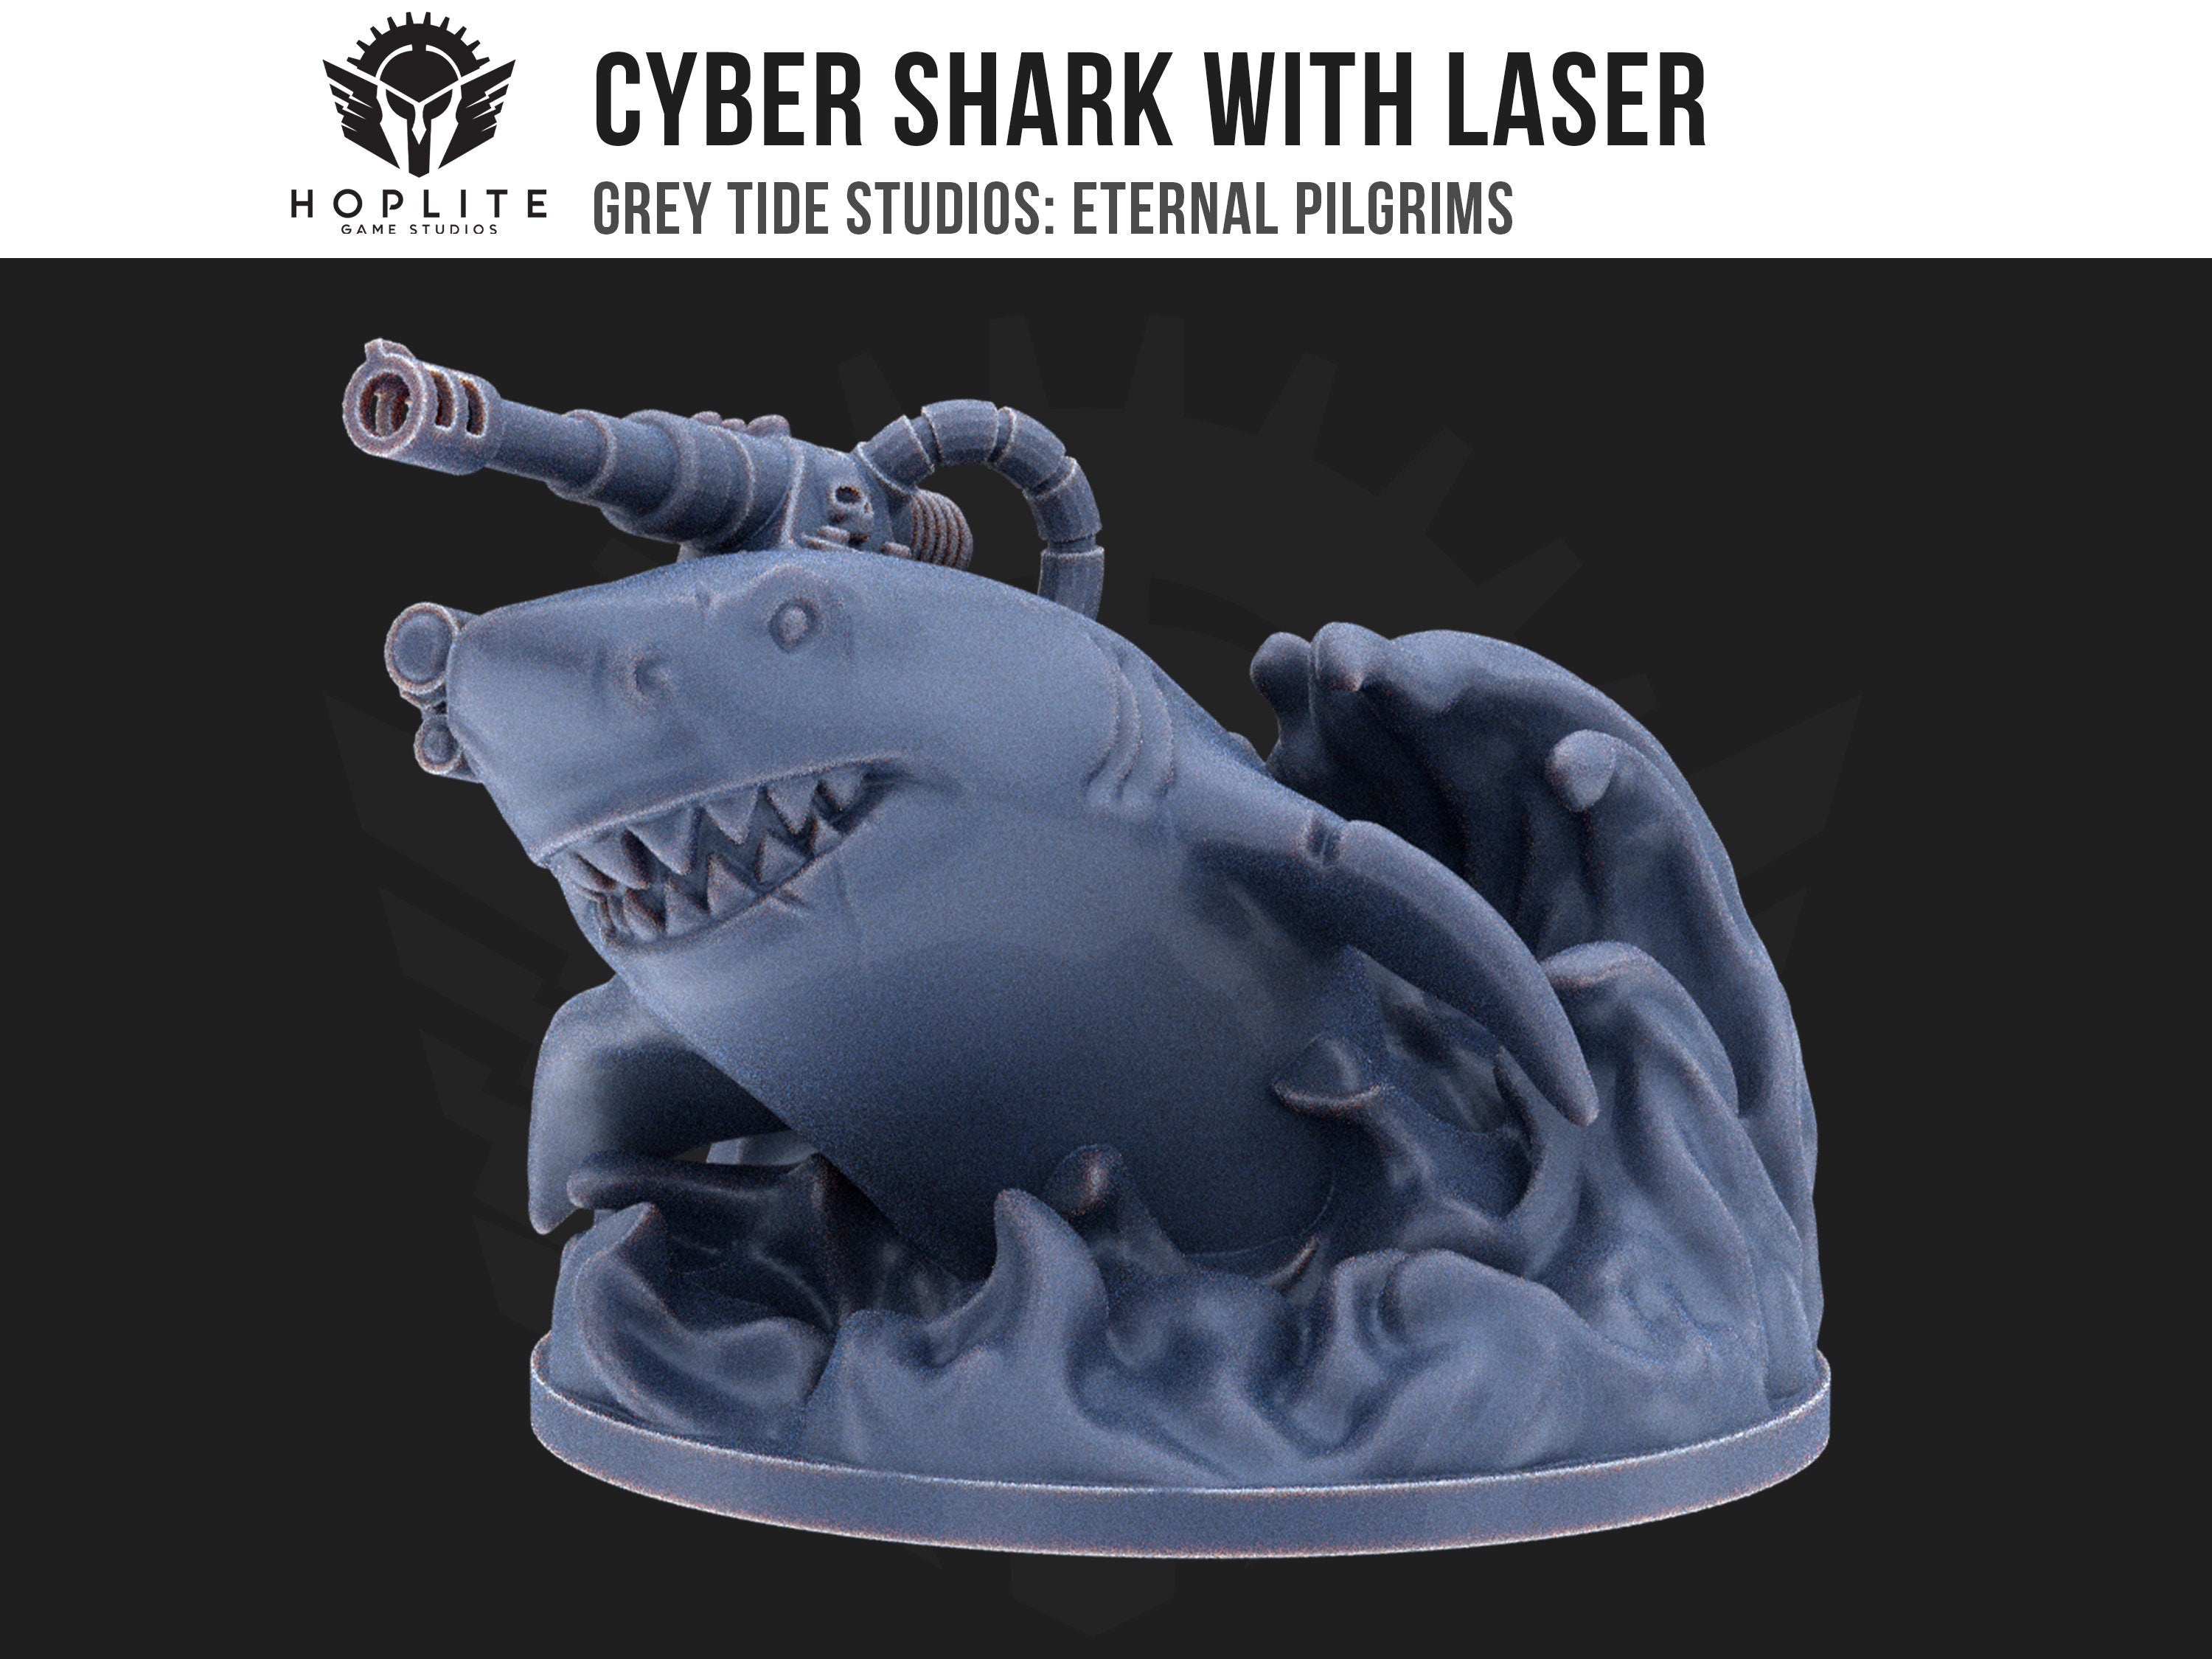 Tiburón cibernético con láser | Estudios de marea gris | Peregrinos eternos | Piezas y brocas de conversión